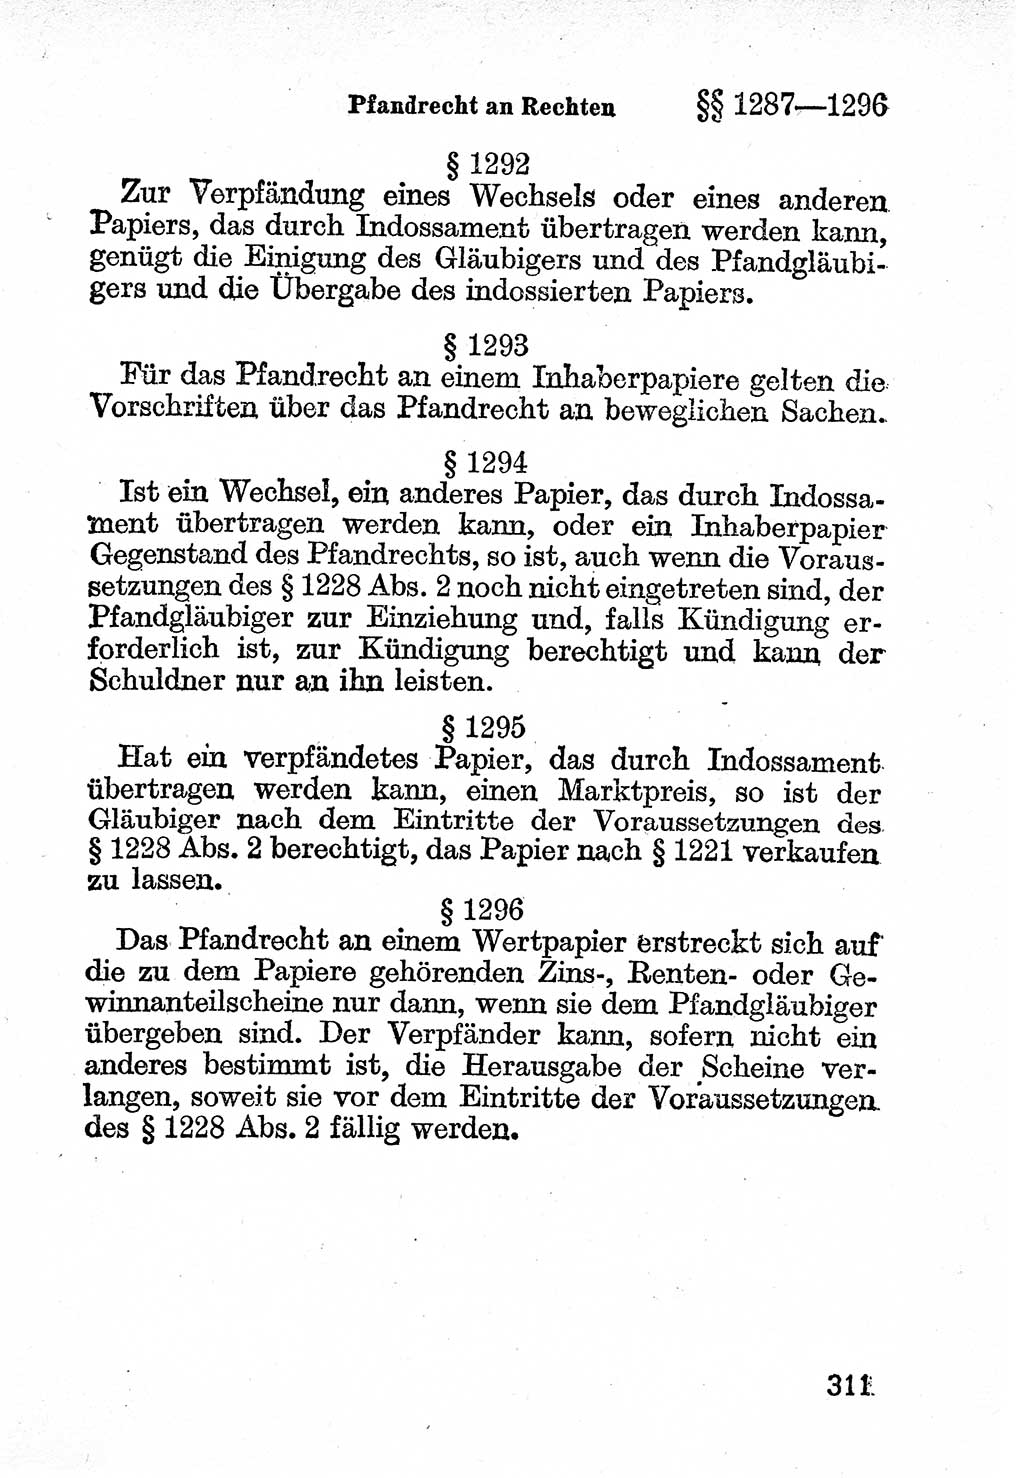 Bürgerliches Gesetzbuch (BGB) nebst wichtigen Nebengesetzen [Deutsche Demokratische Republik (DDR)] 1956, Seite 311 (BGB Nebenges. DDR 1956, S. 311)